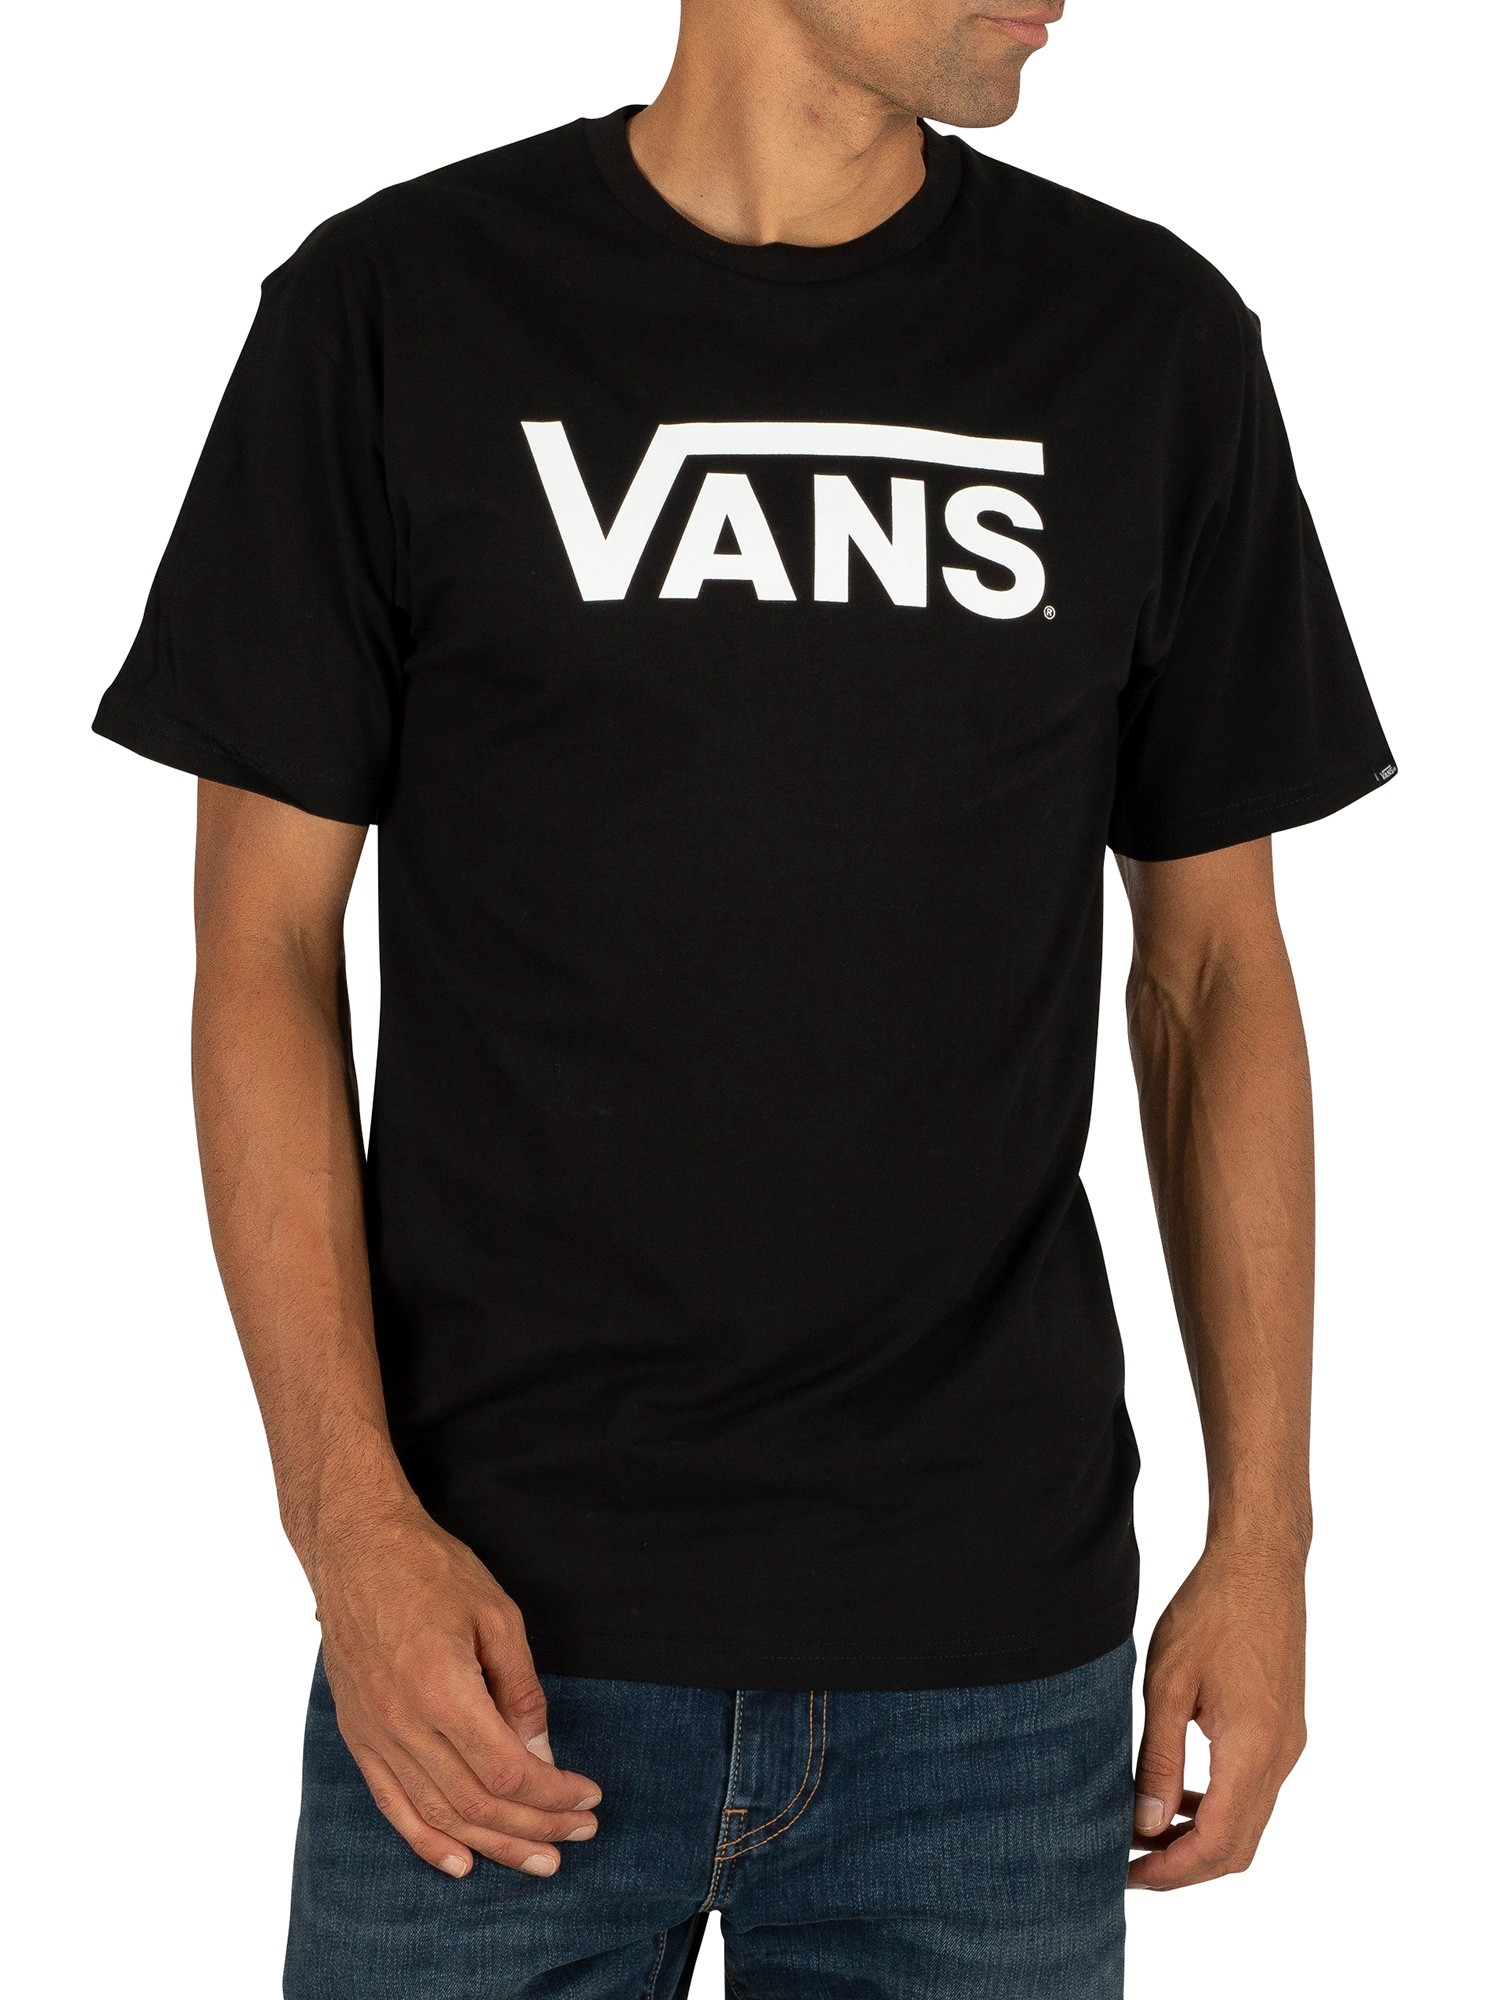 classic vans t shirt